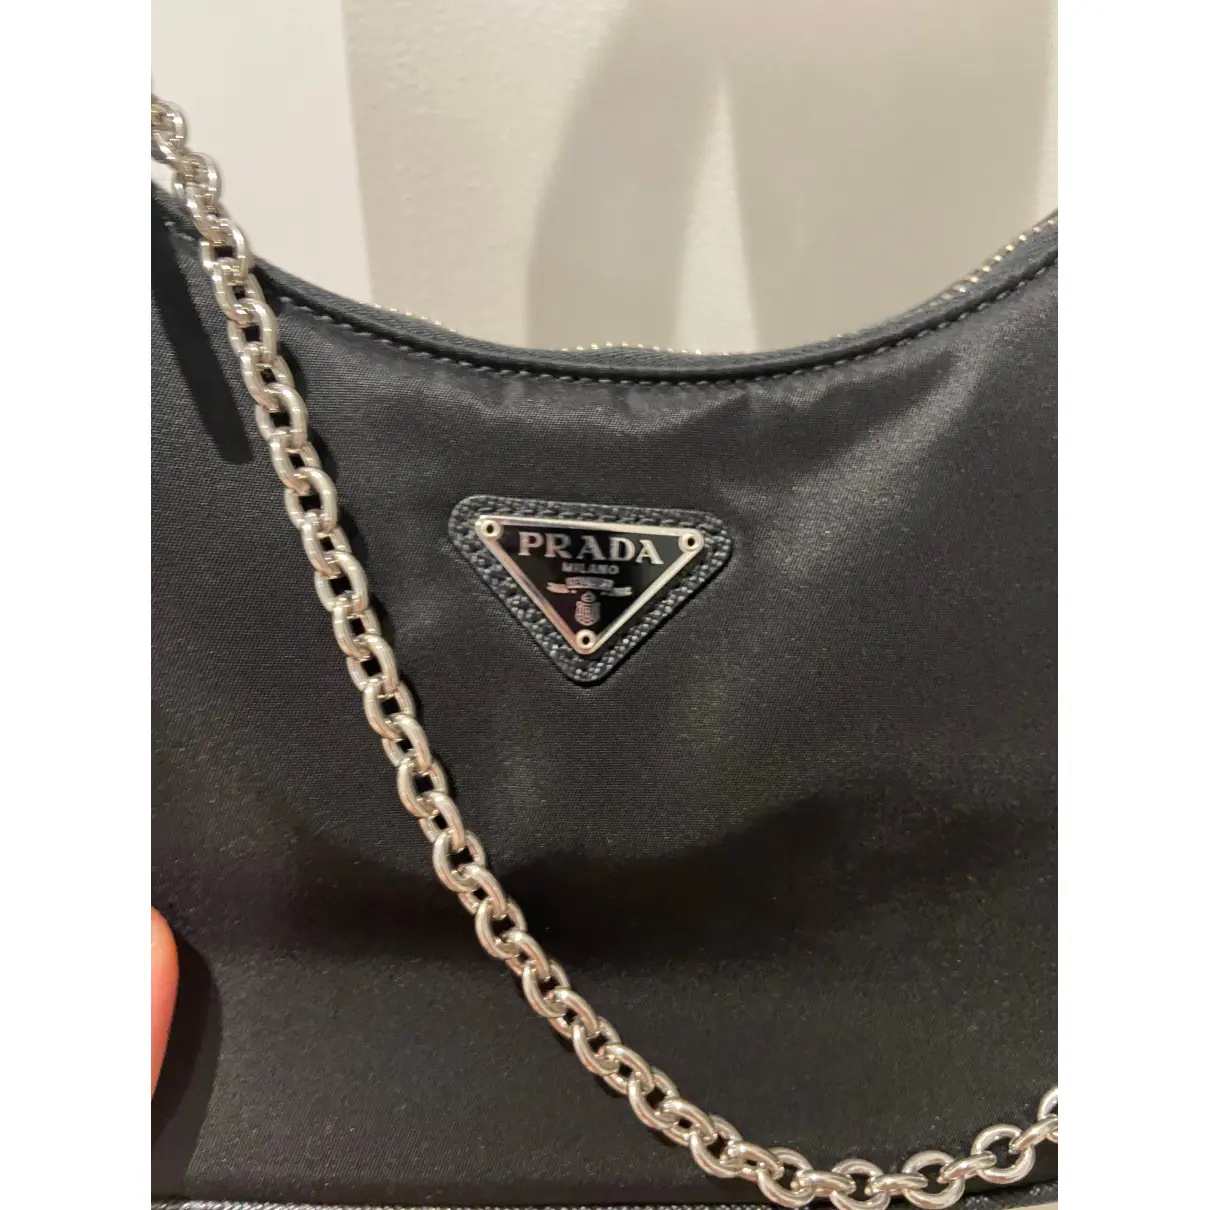 Buy Prada Re-edition cloth handbag online